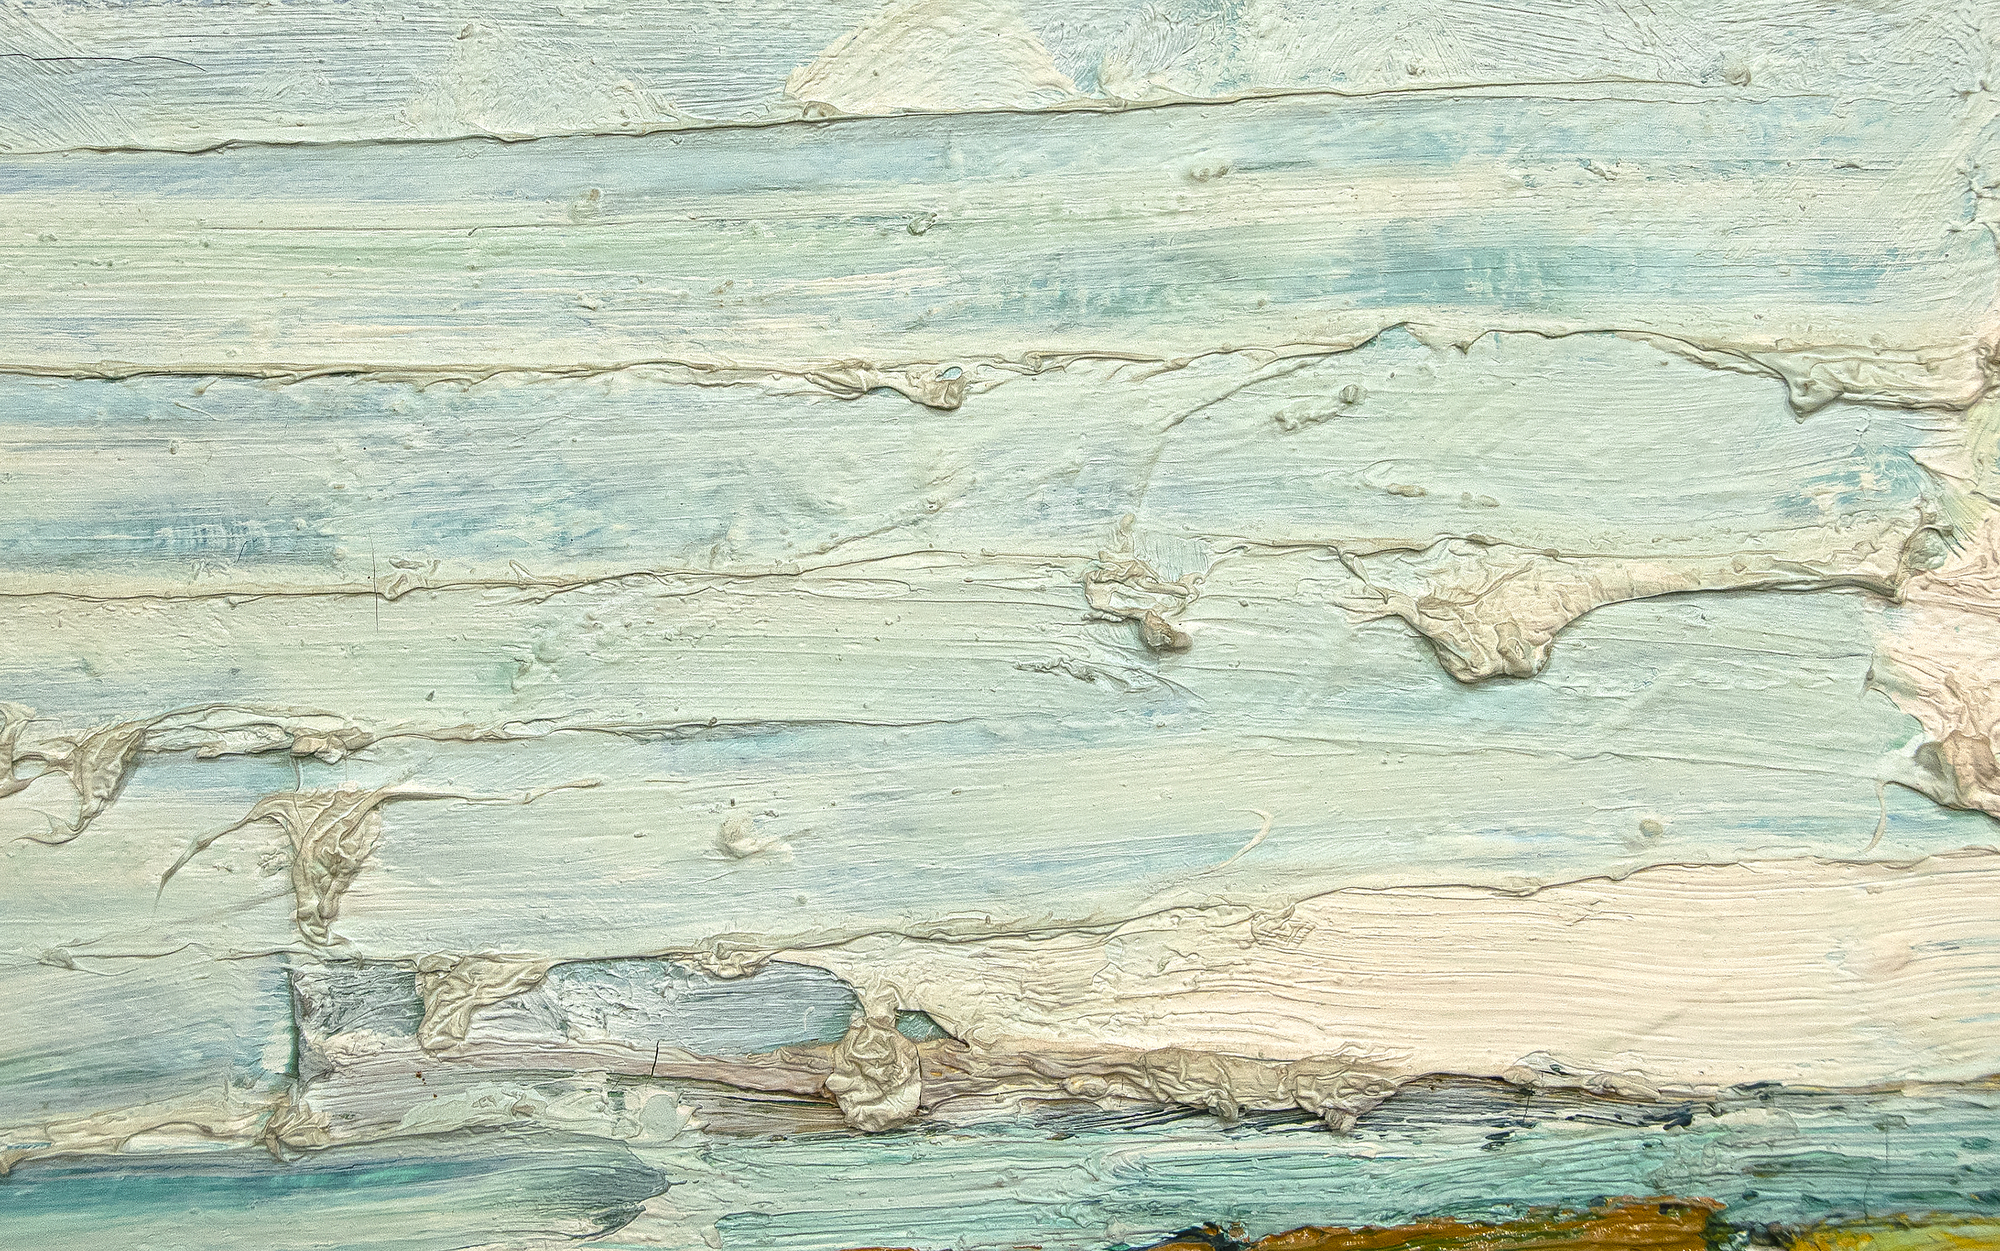 Roland Petersens Lunch ist ein Öl auf Leinwand aus dem Jahr 1961, einem kritischen Jahr für seine bekannteste Picnic-Serie. Sein Werk aus dieser Zeit ist geprägt von dickem Impasto und satter Farbe. Petersen wurde stark von Studien bei Hans Hoffman beeinflusst und experimentierte mit der Abstraktion, wobei er abstrakte und figurative Stile miteinander verband. Das Luncheon, das im Alter von 35 Jahren entstanden ist, liegt in einem Zeitrahmen, der seine ausverkaufte Einzelausstellung 1962 in der Staempfli Gallery, New York, seine Einzelausstellung in Esther-Robles, Los Angeles, und das Guggenheim-Stipendium, das die Möglichkeit zum Studium in Paris bot, umfasst.